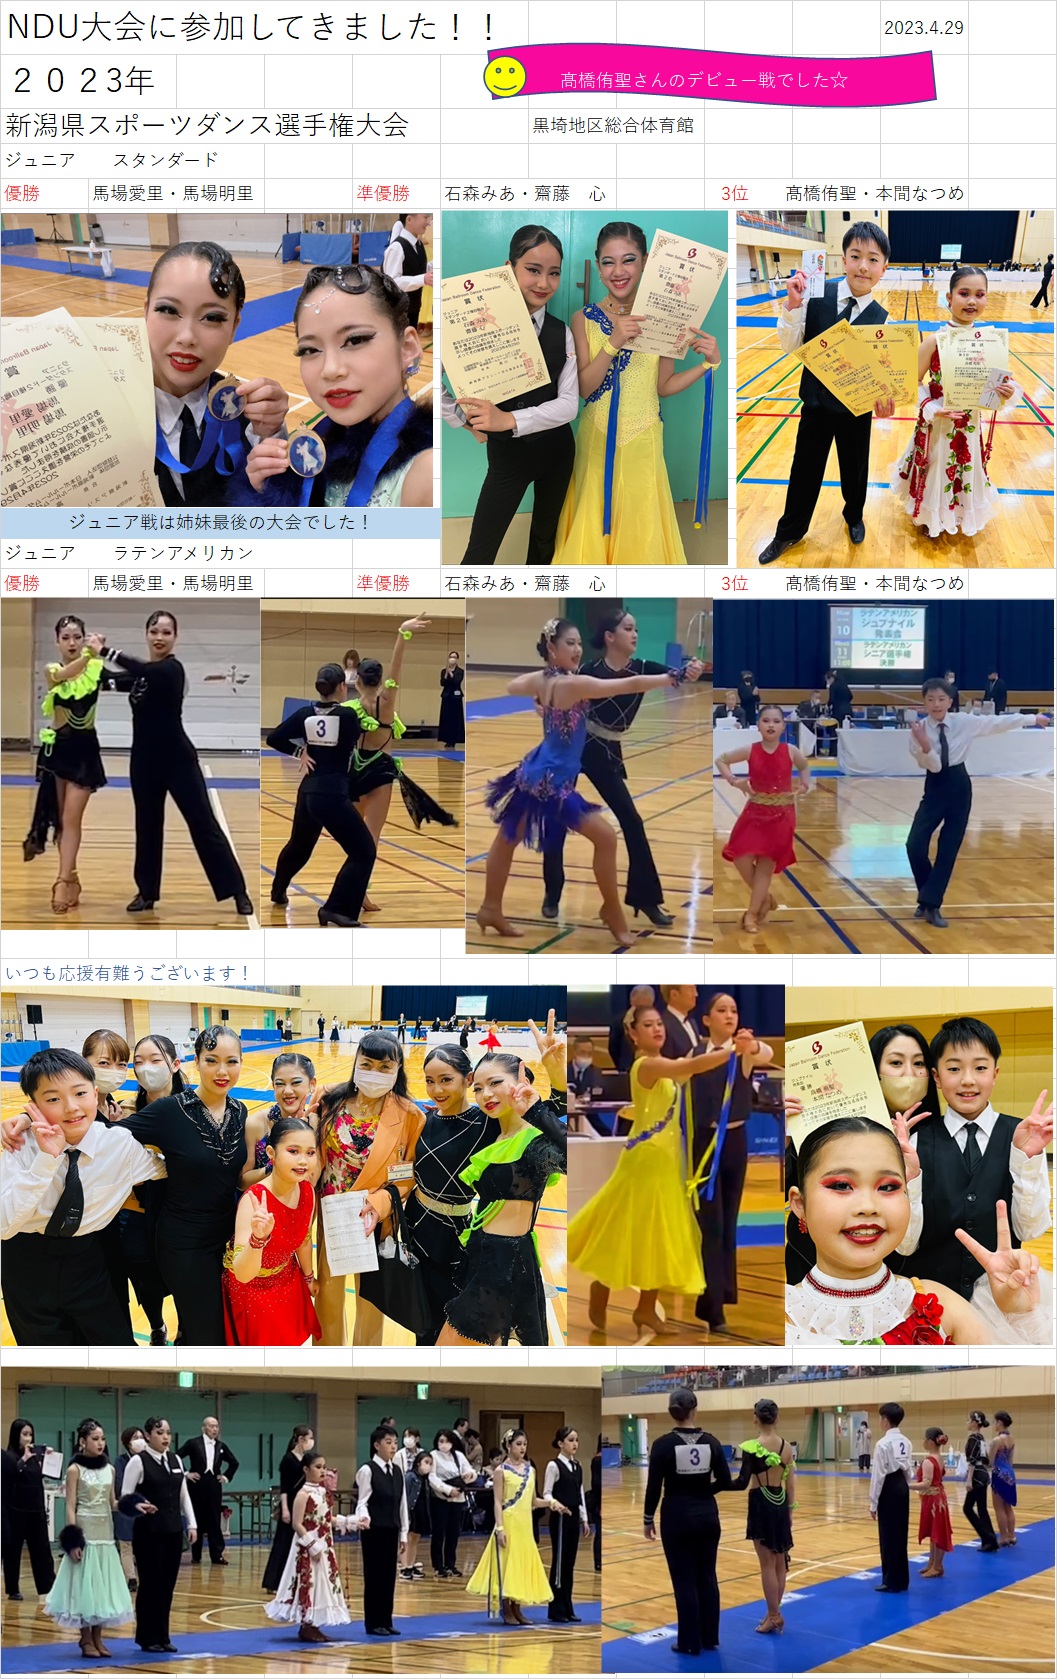 新潟県スポーツダンス大会